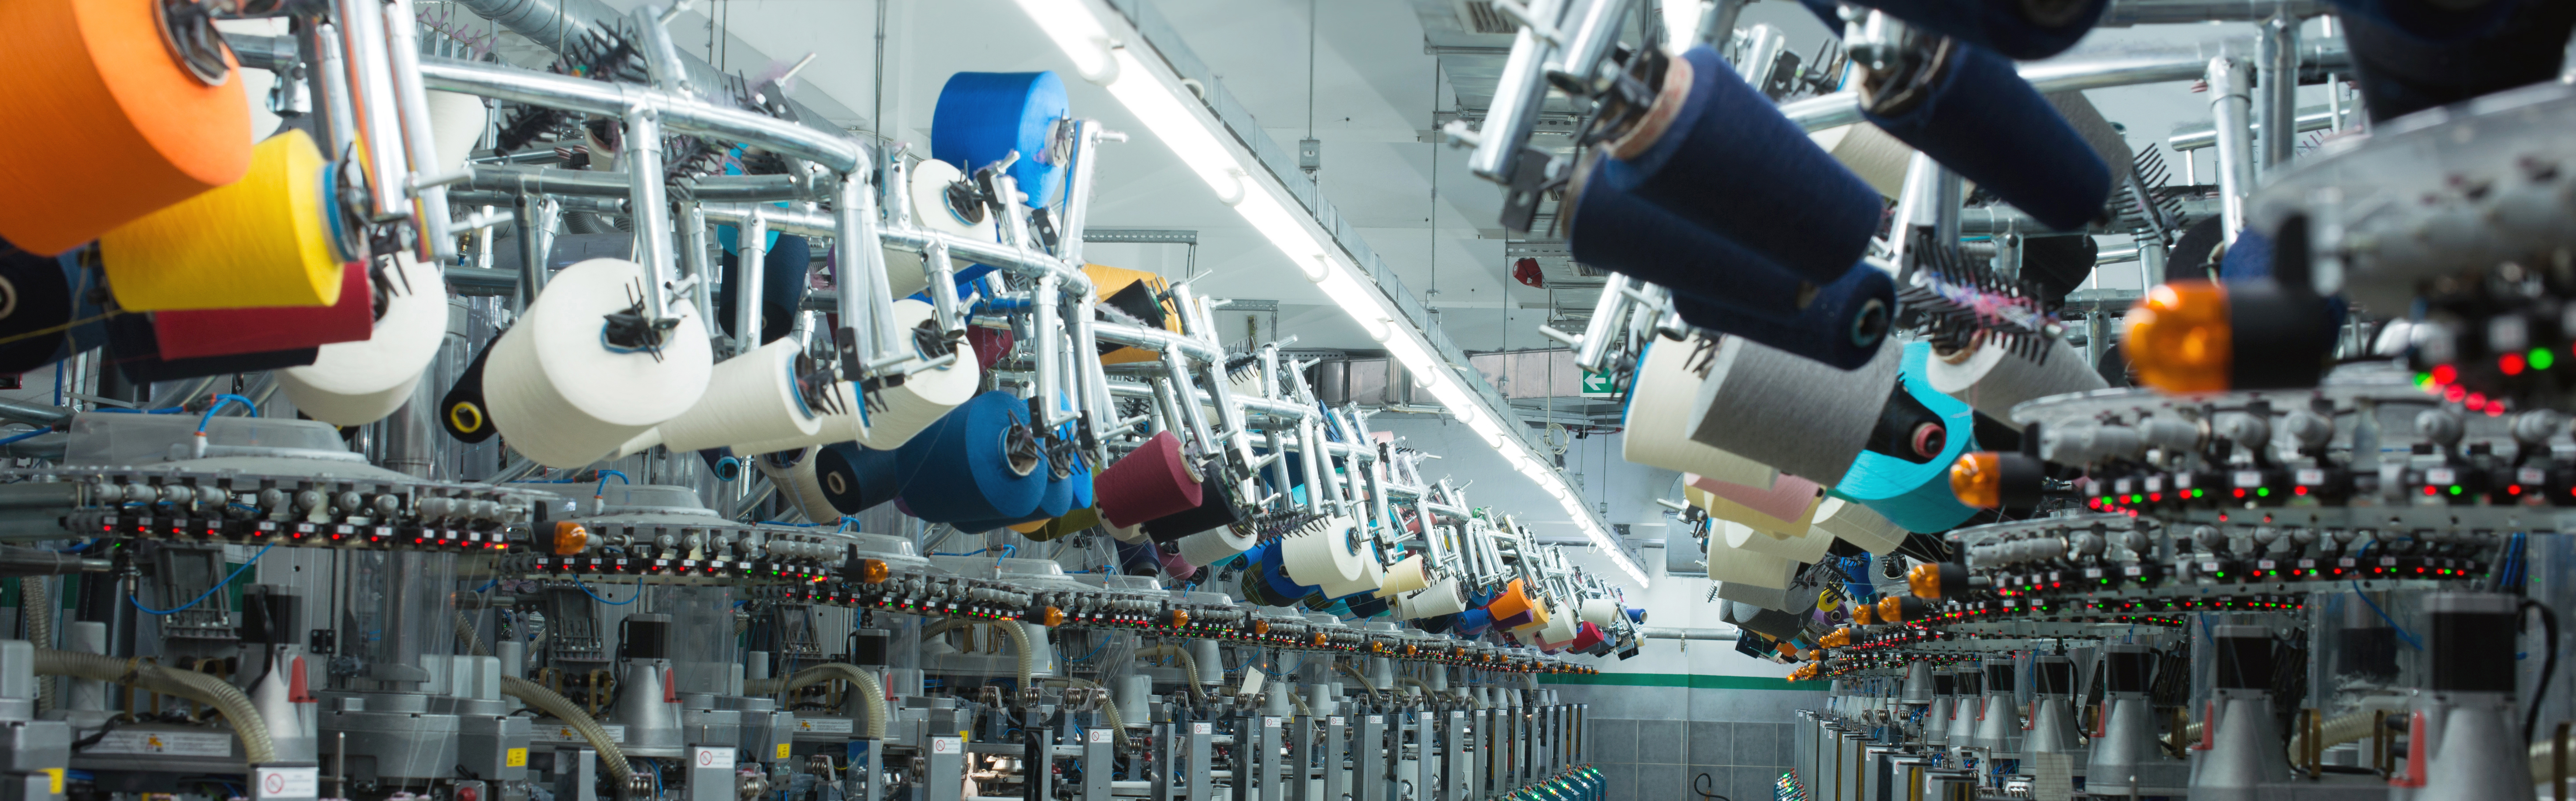 In der deutschen Textilindustrie entstehen durch Färbefehler jährlich 8,8 Mio. Euro Kosten.